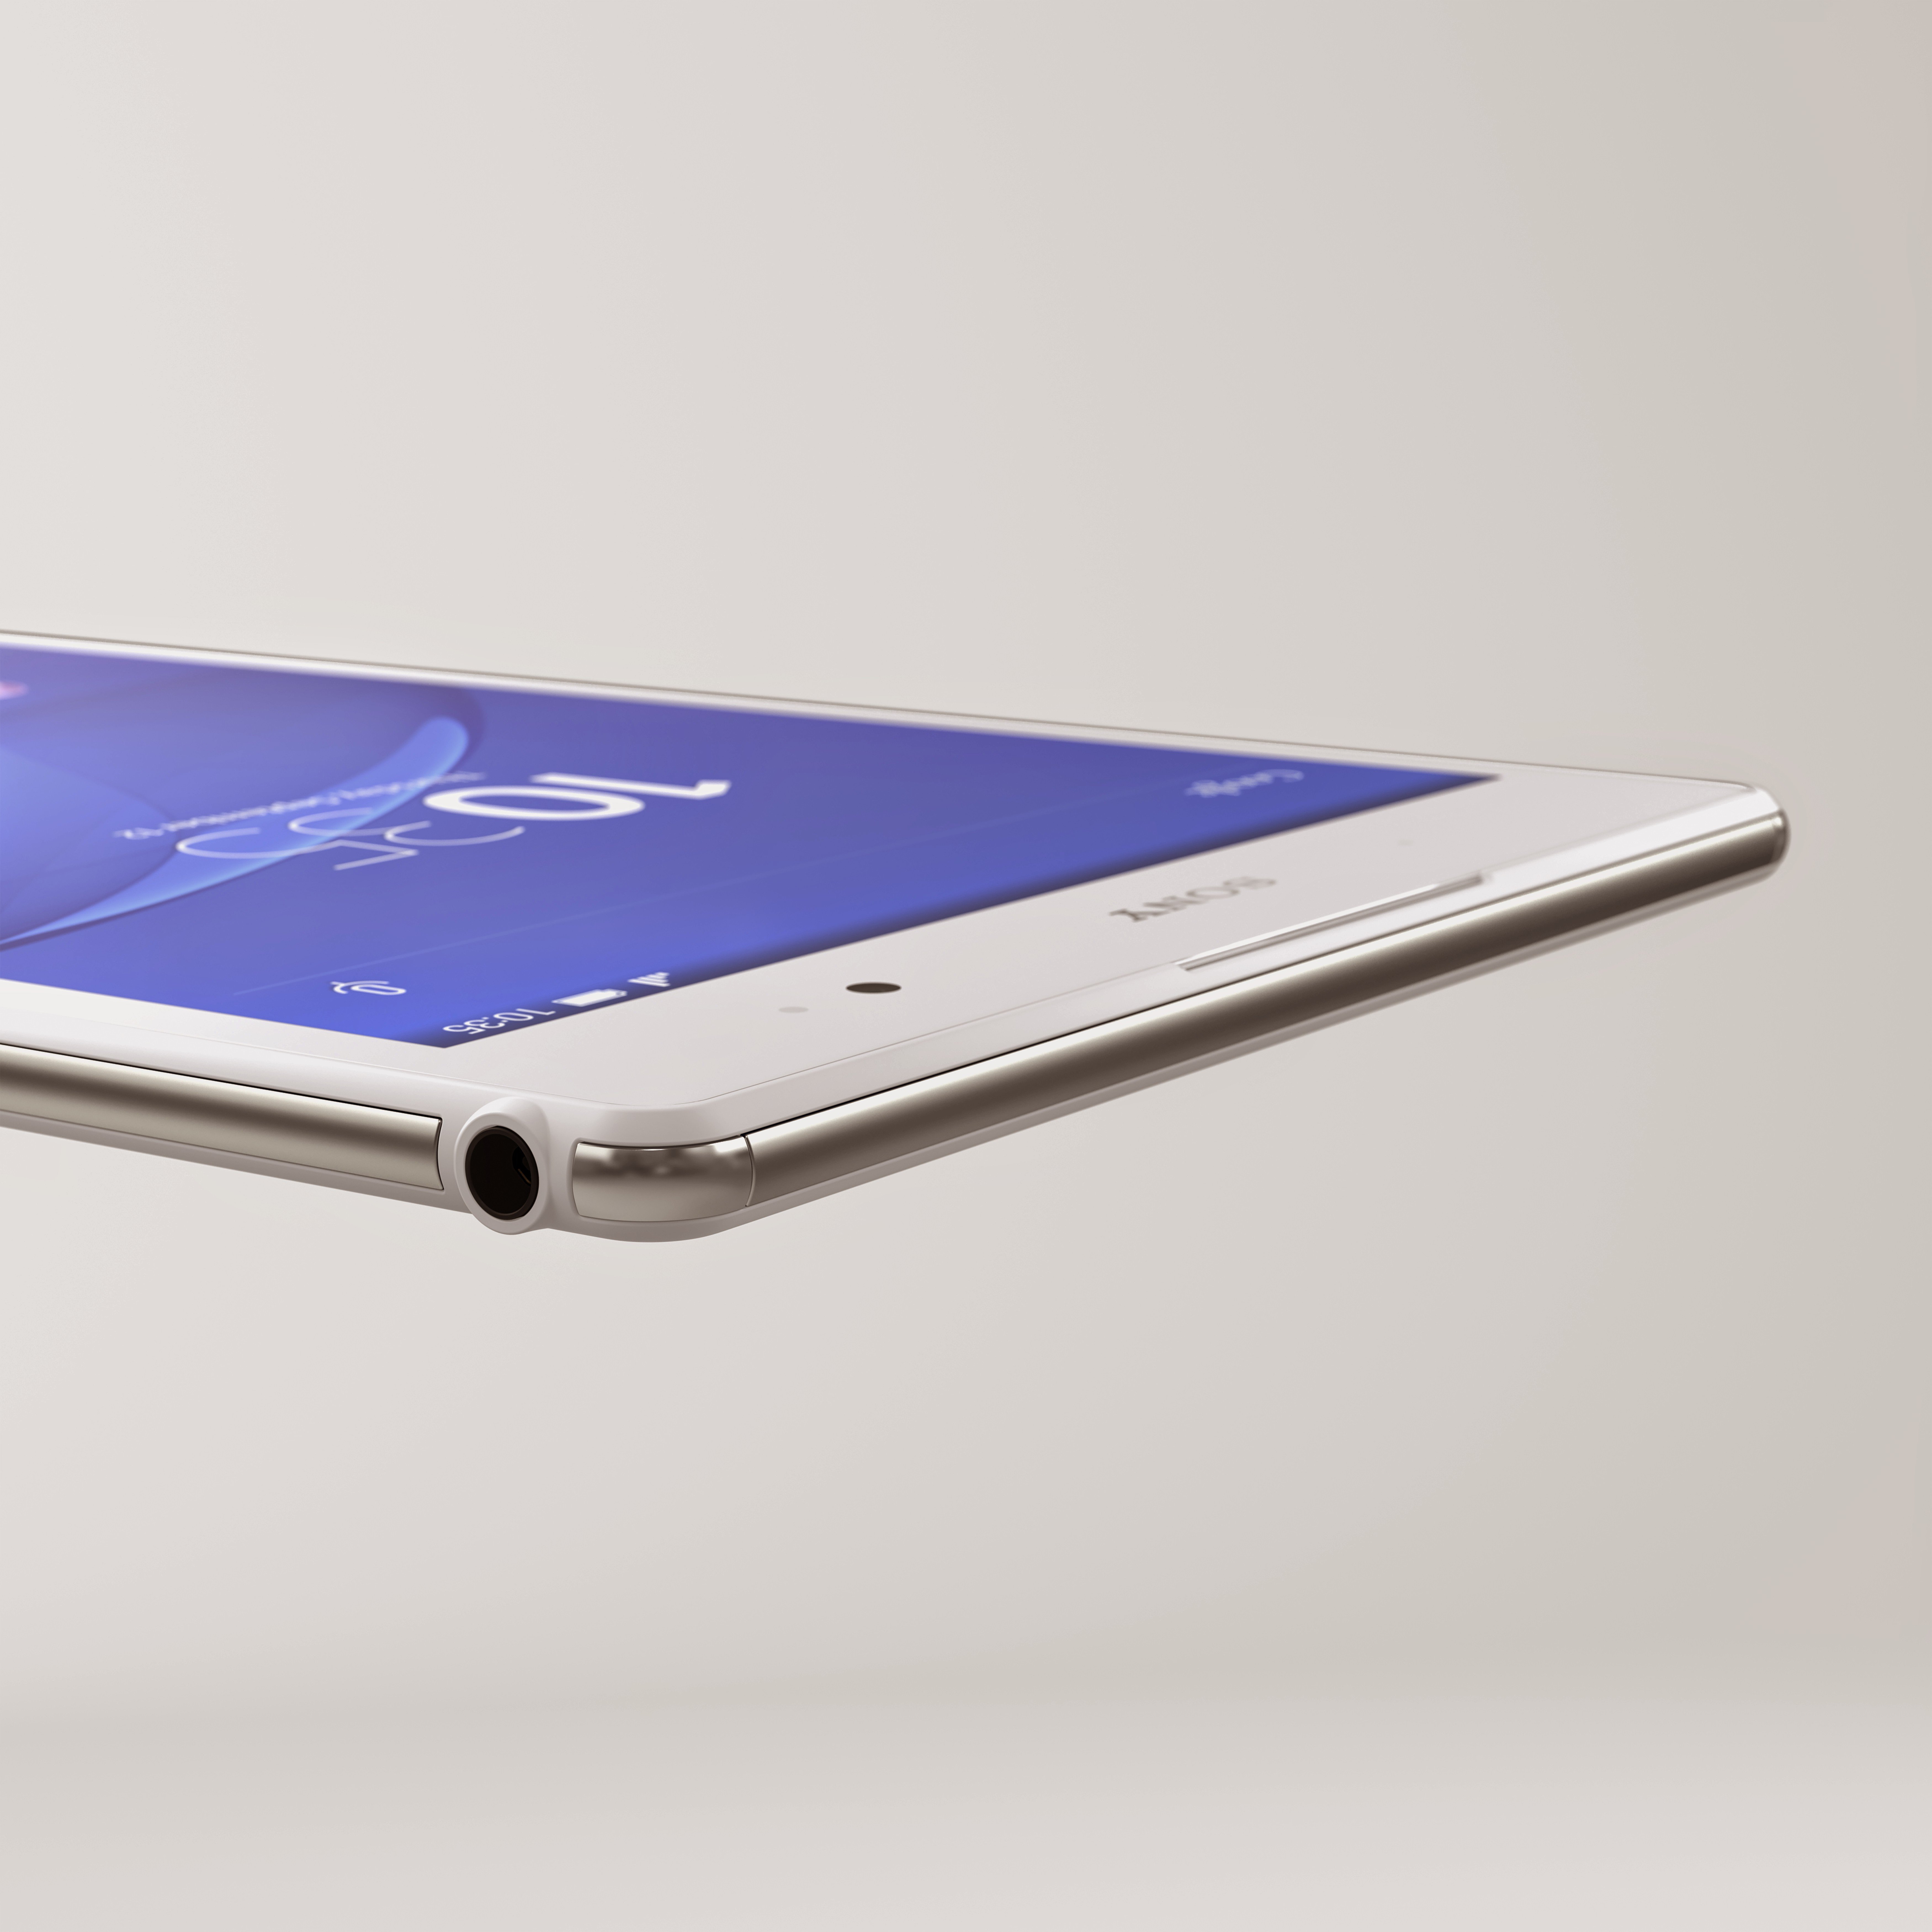 Sony Xperia Z3 Tablet Compact è ufficiale: ecco immagini e caratteristiche